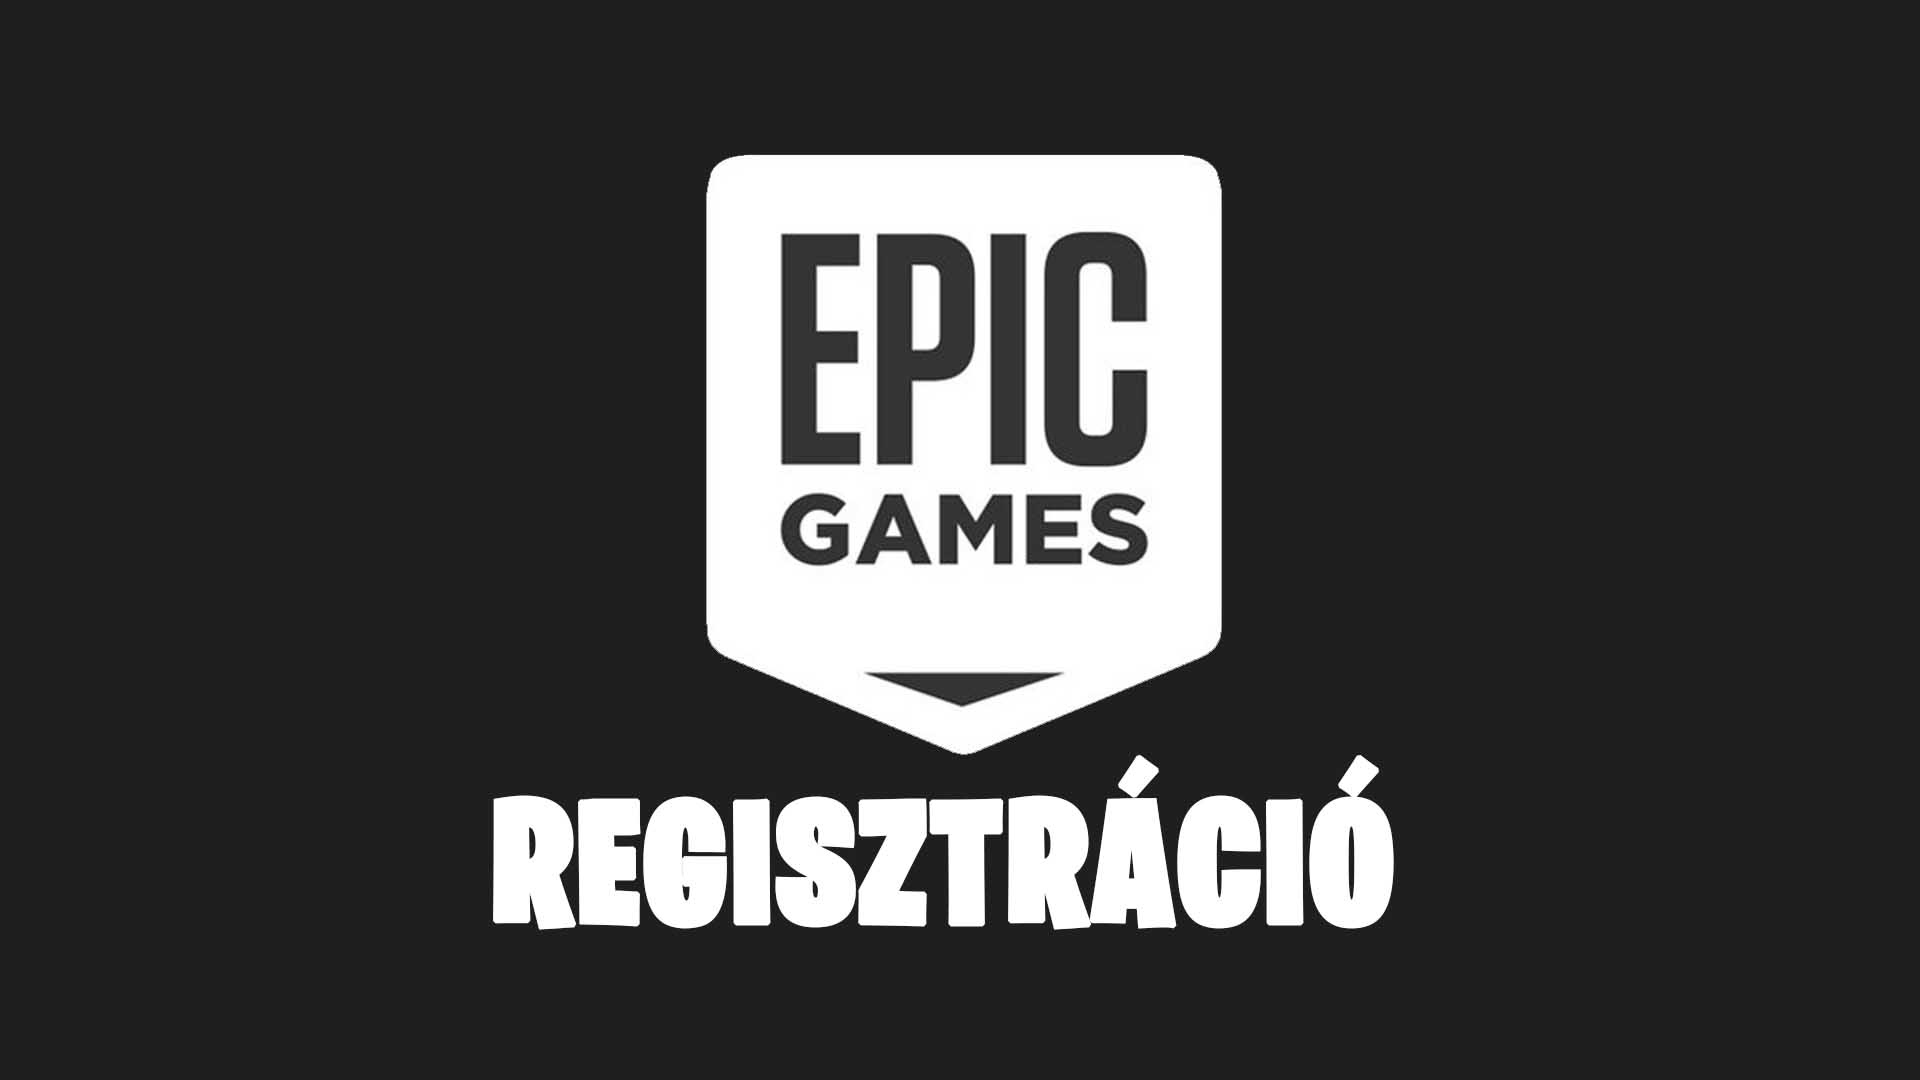 [Epic Games regisztráció] Epic Games regisztráció lépései magyarul - Epic Games magyar nyelvű regisztrációs útmutató 1